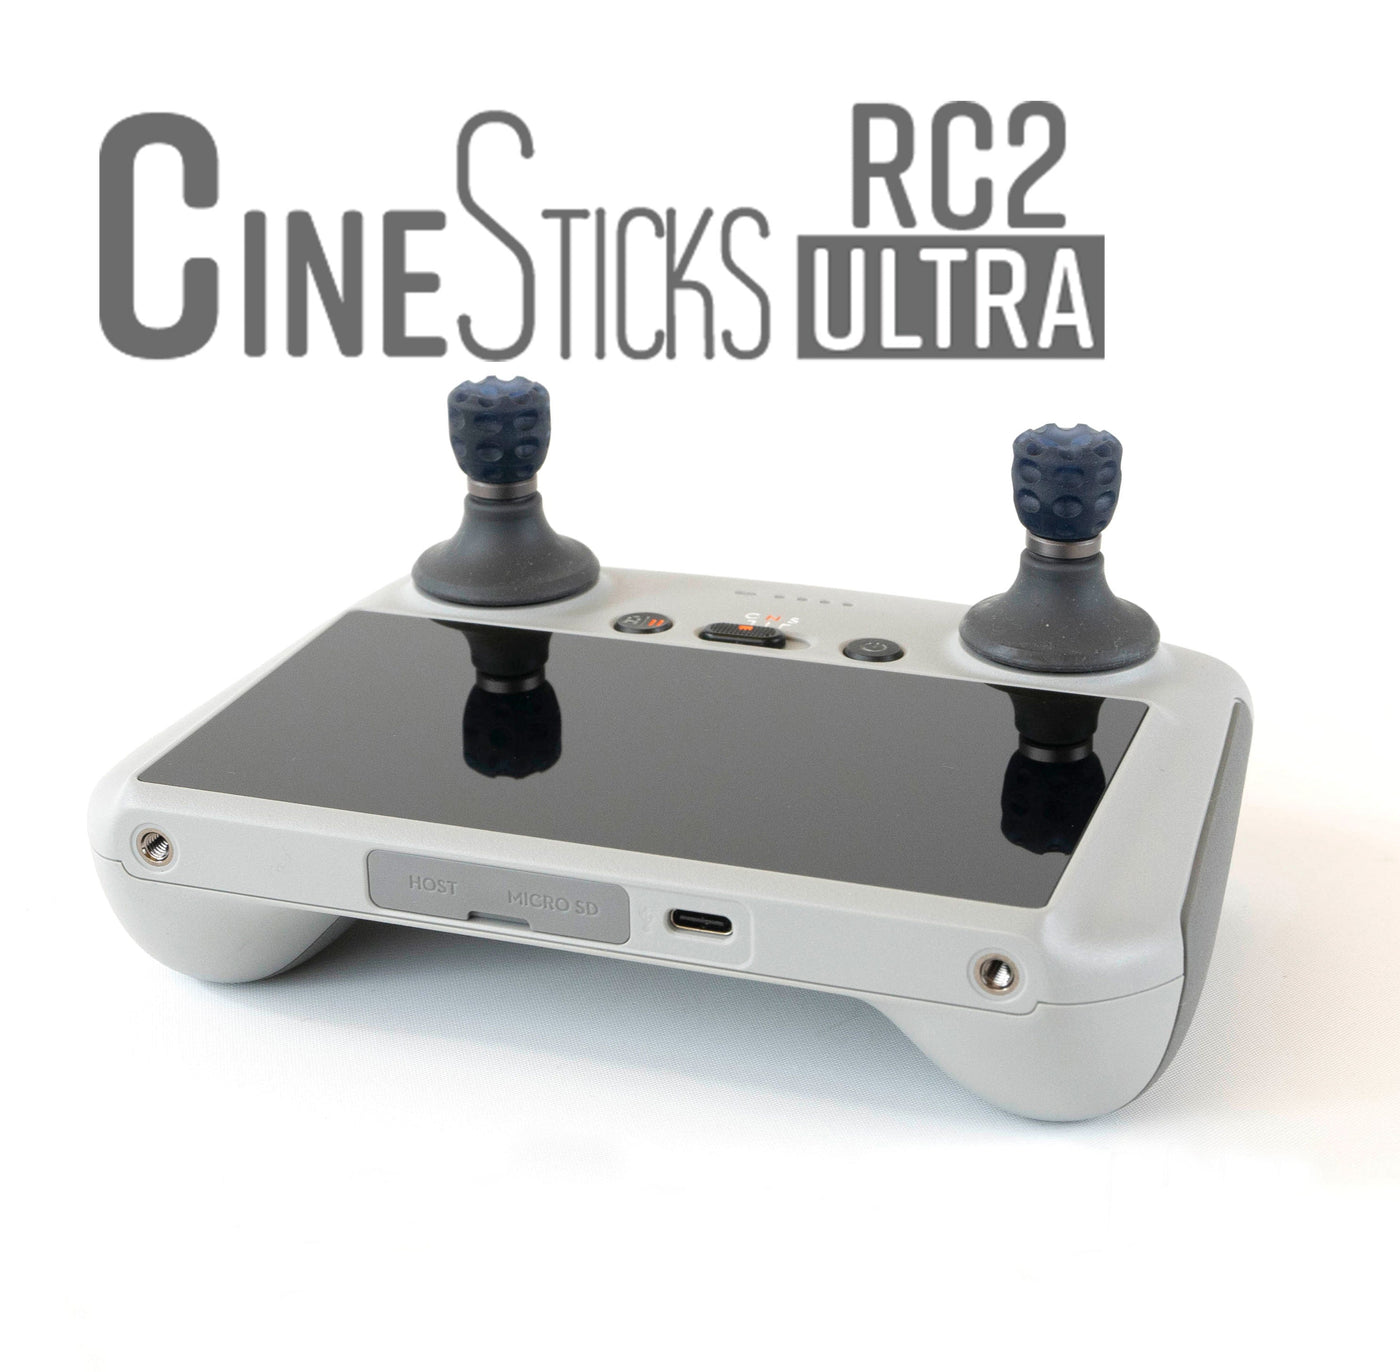 CineSticks RC2 Pro